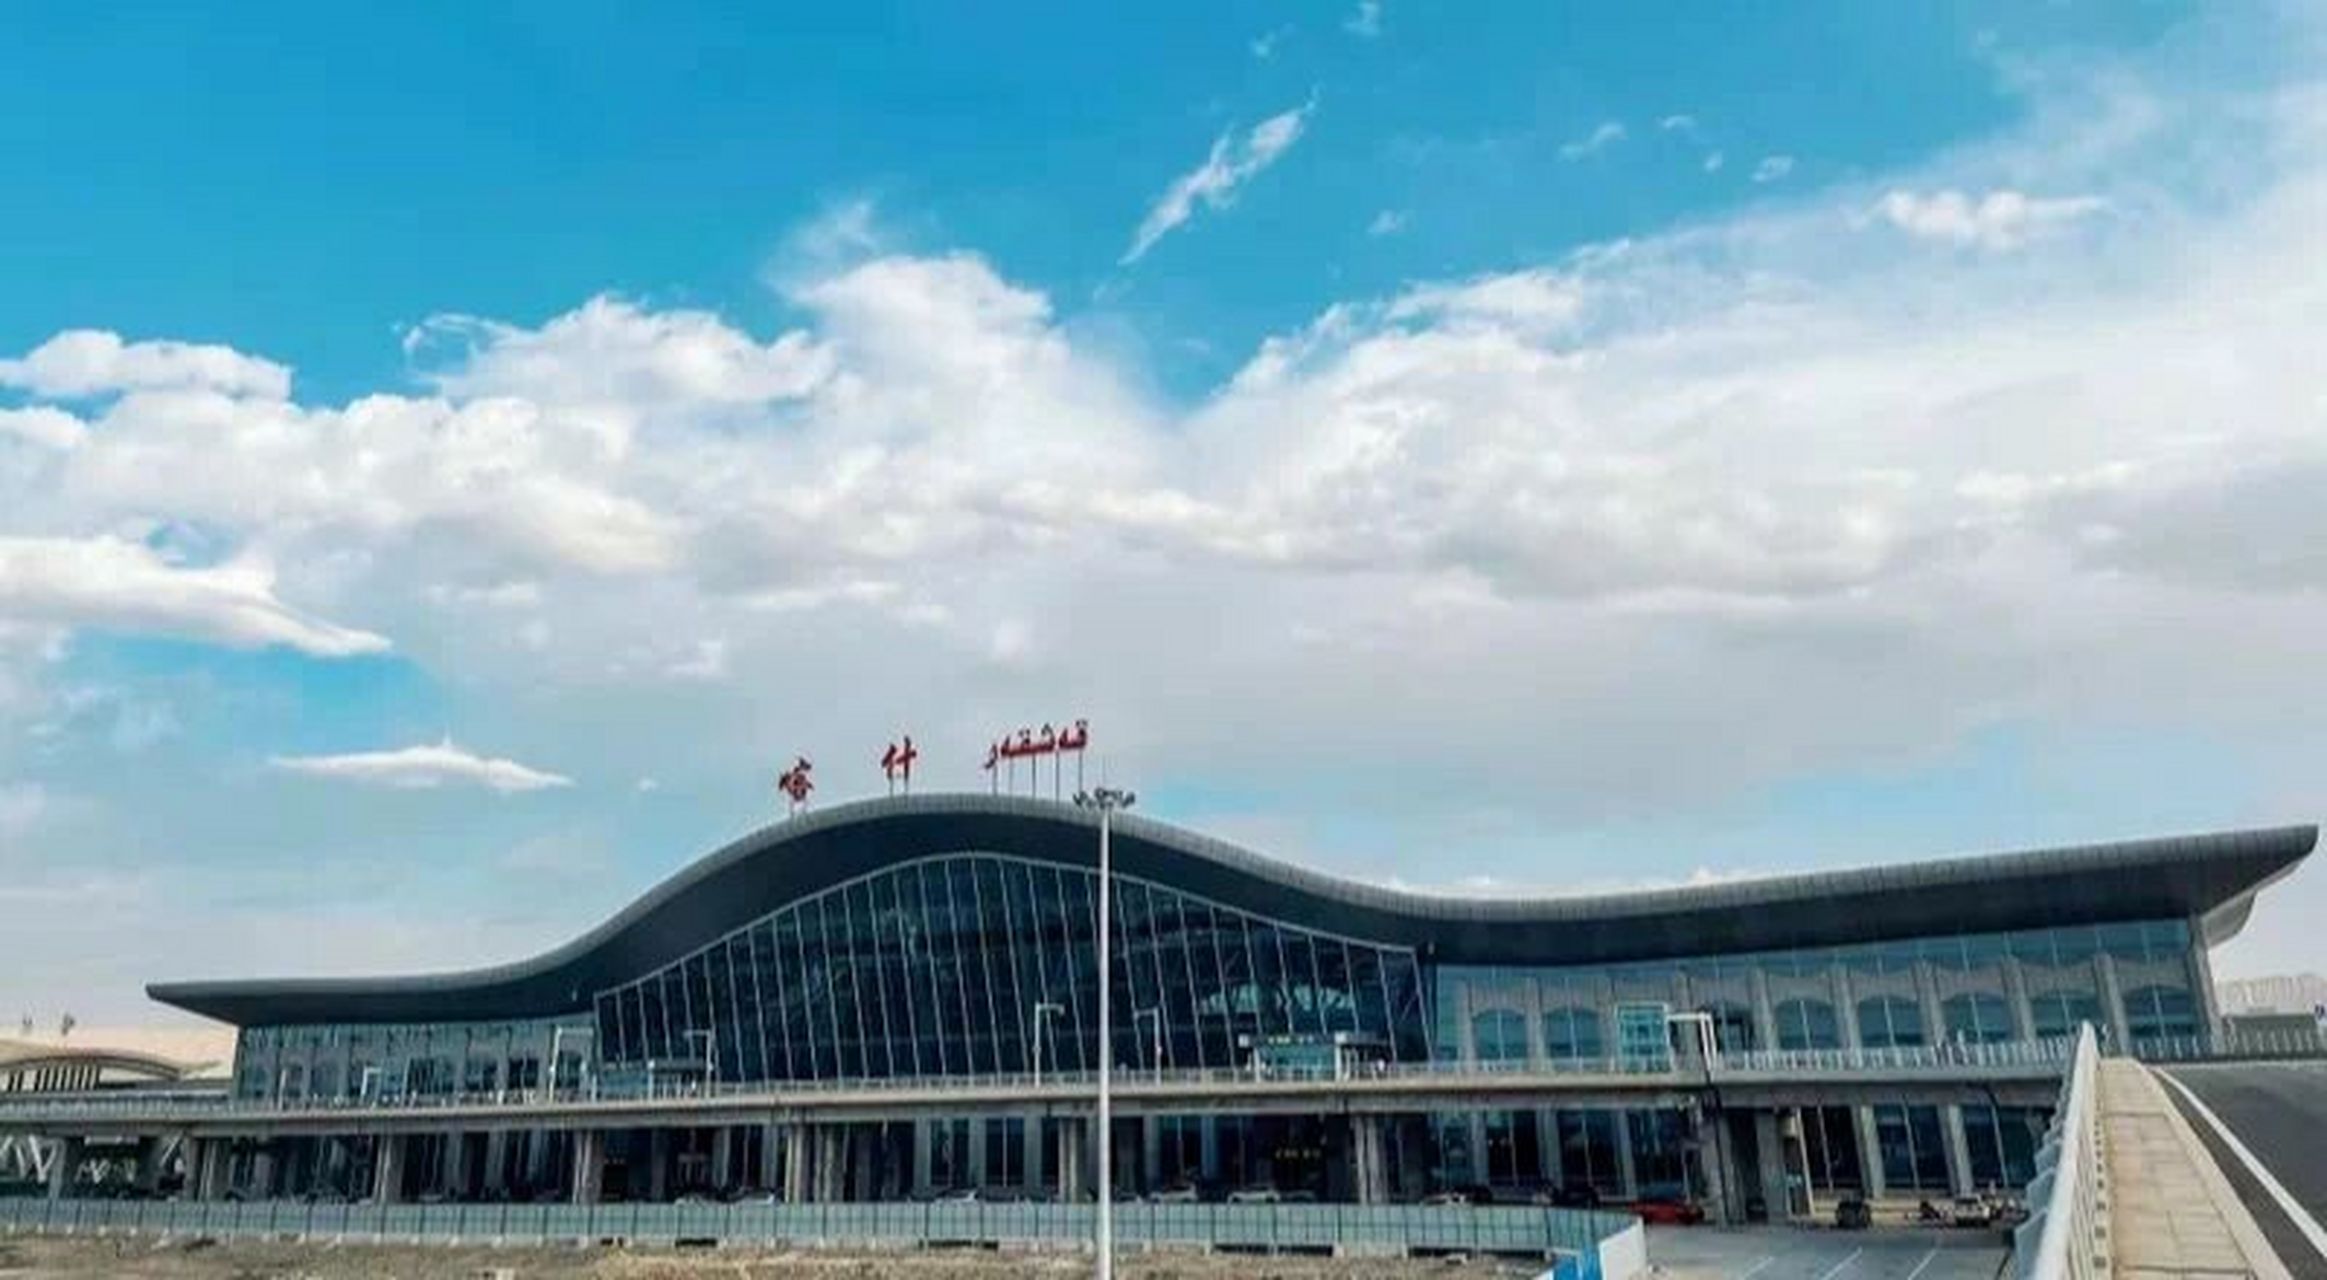 新疆喀什机场t2航站楼今日投入使用 新疆机场今年可谓捷报频传,疯狂